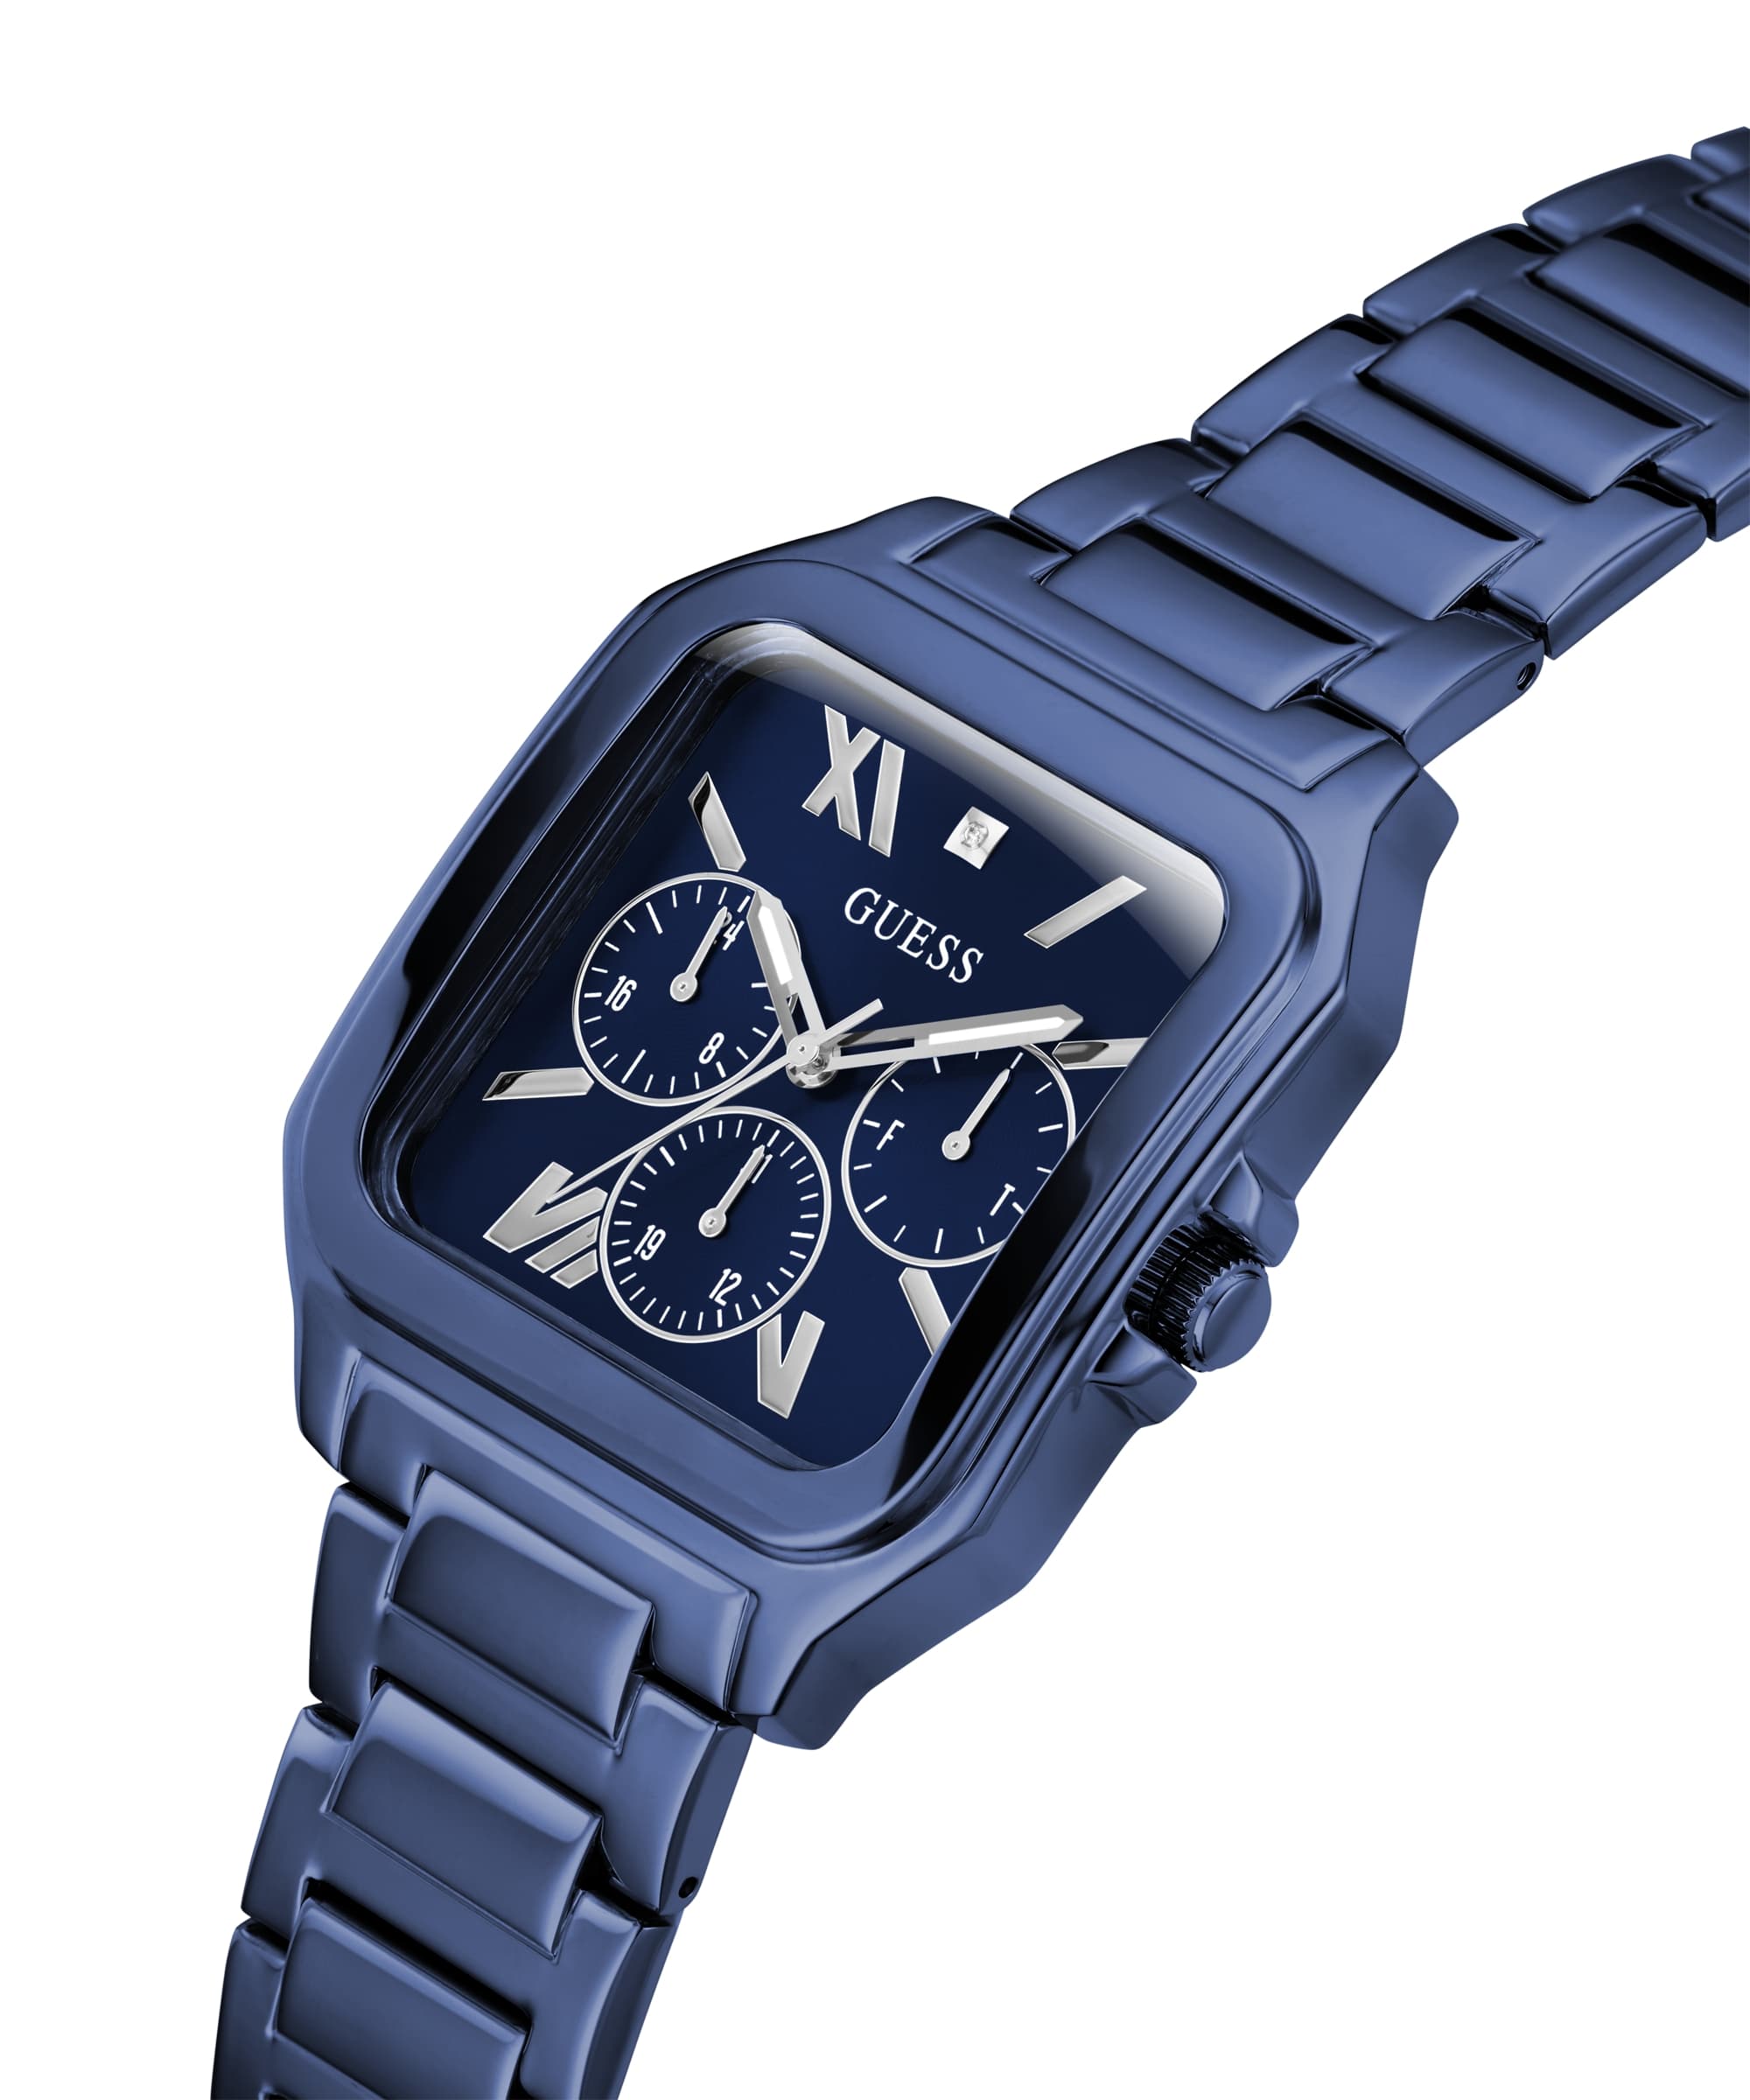 Guess Phoenix Blue Dial - Tonneau Watches Just Multi-Function GW0202 – Watch Case Men